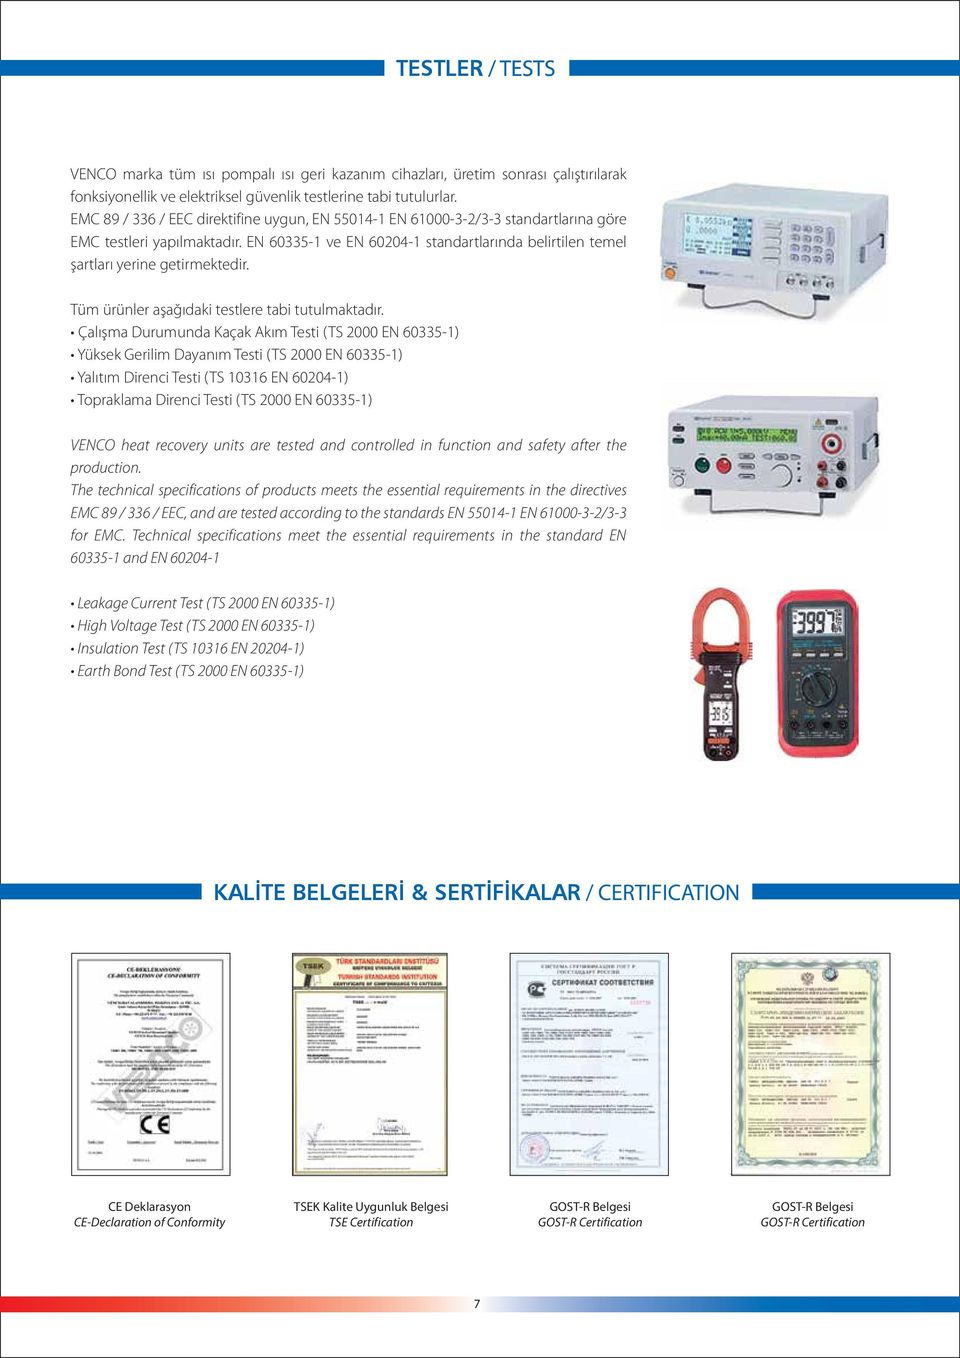 EN 60335-1 ve EN 60204-1 standartlarında belirtilen temel şartları yerine getirmektedir. Tüm ürünler aşağıdaki testlere tabi tutulmaktadır.